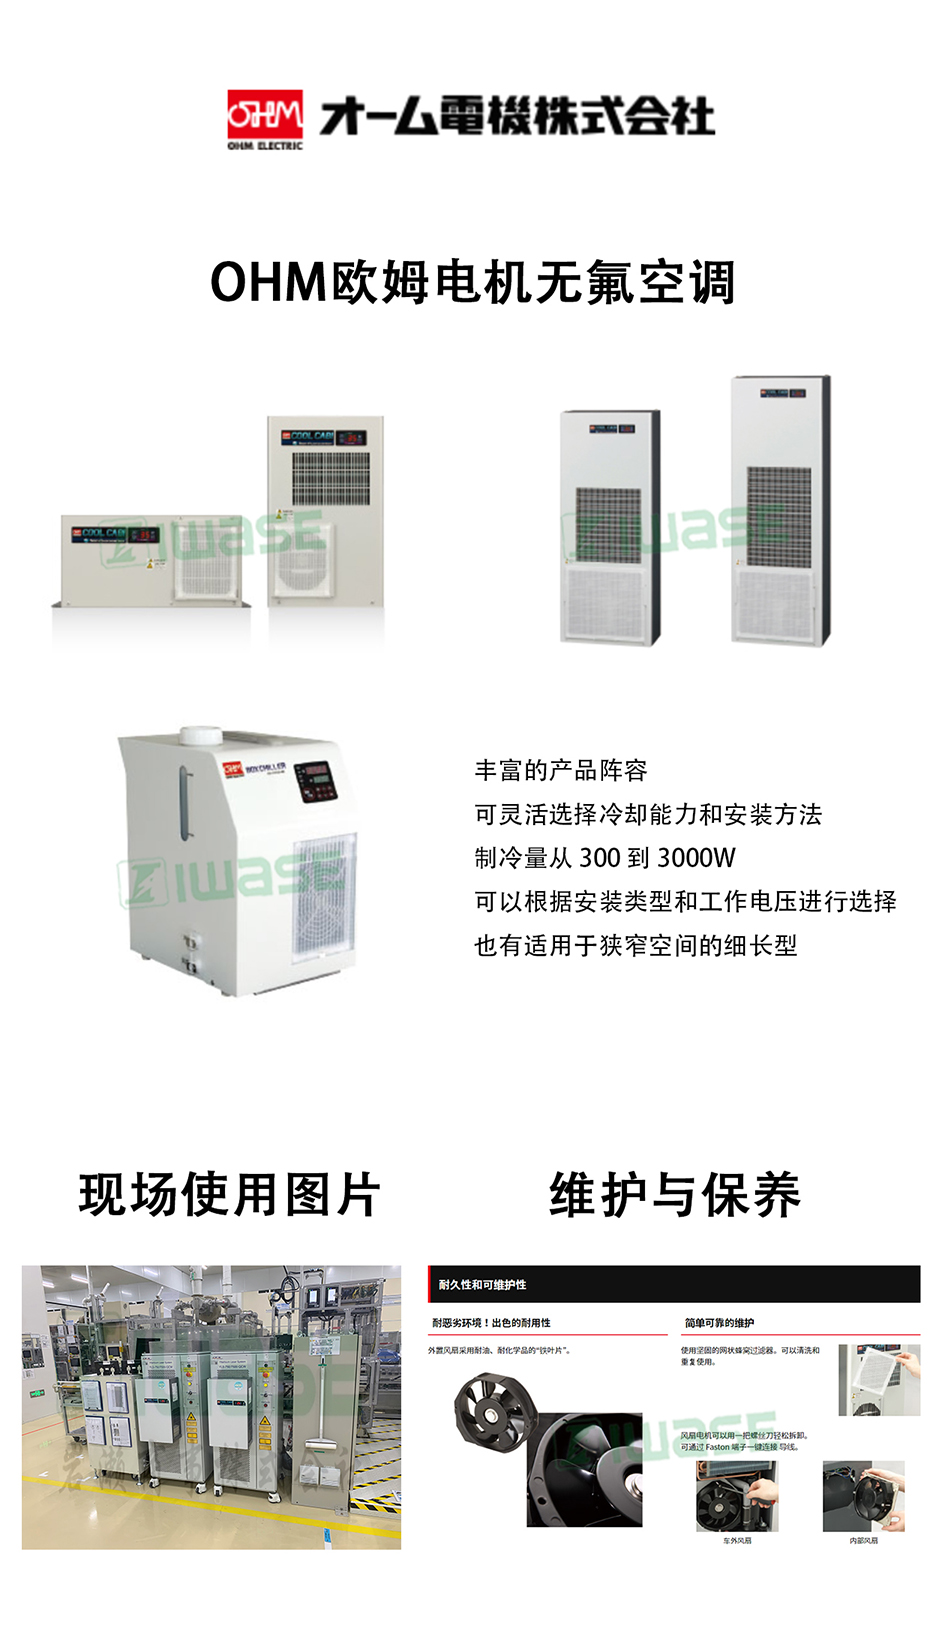 OHM欧姆电机/简易性温控器/OCE-TC91-8Y1-1C